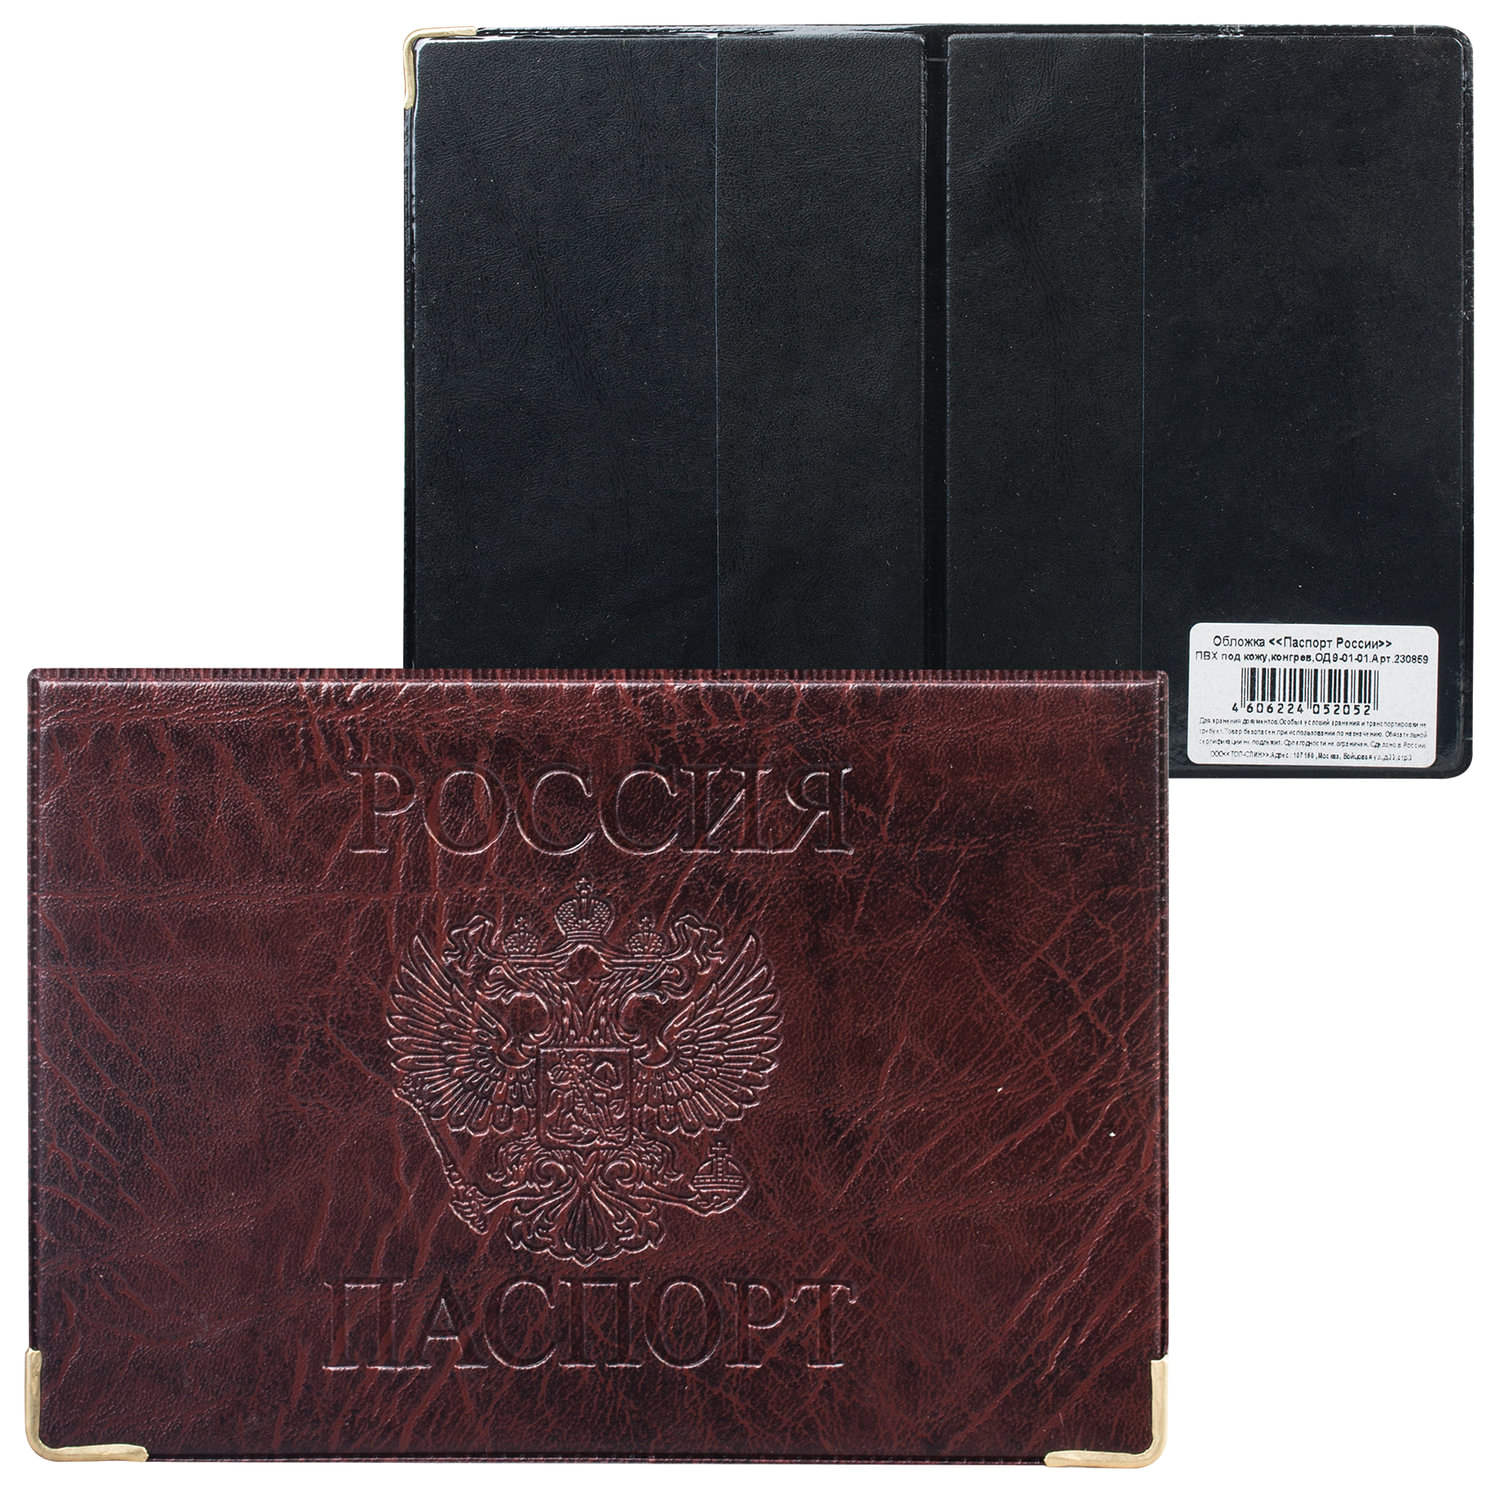 Обложка для паспорта горизонтальная с гербом, ПВХ под кожу, конгревное тиснение, коричневая, ОД 9-01-01, (15 шт.)